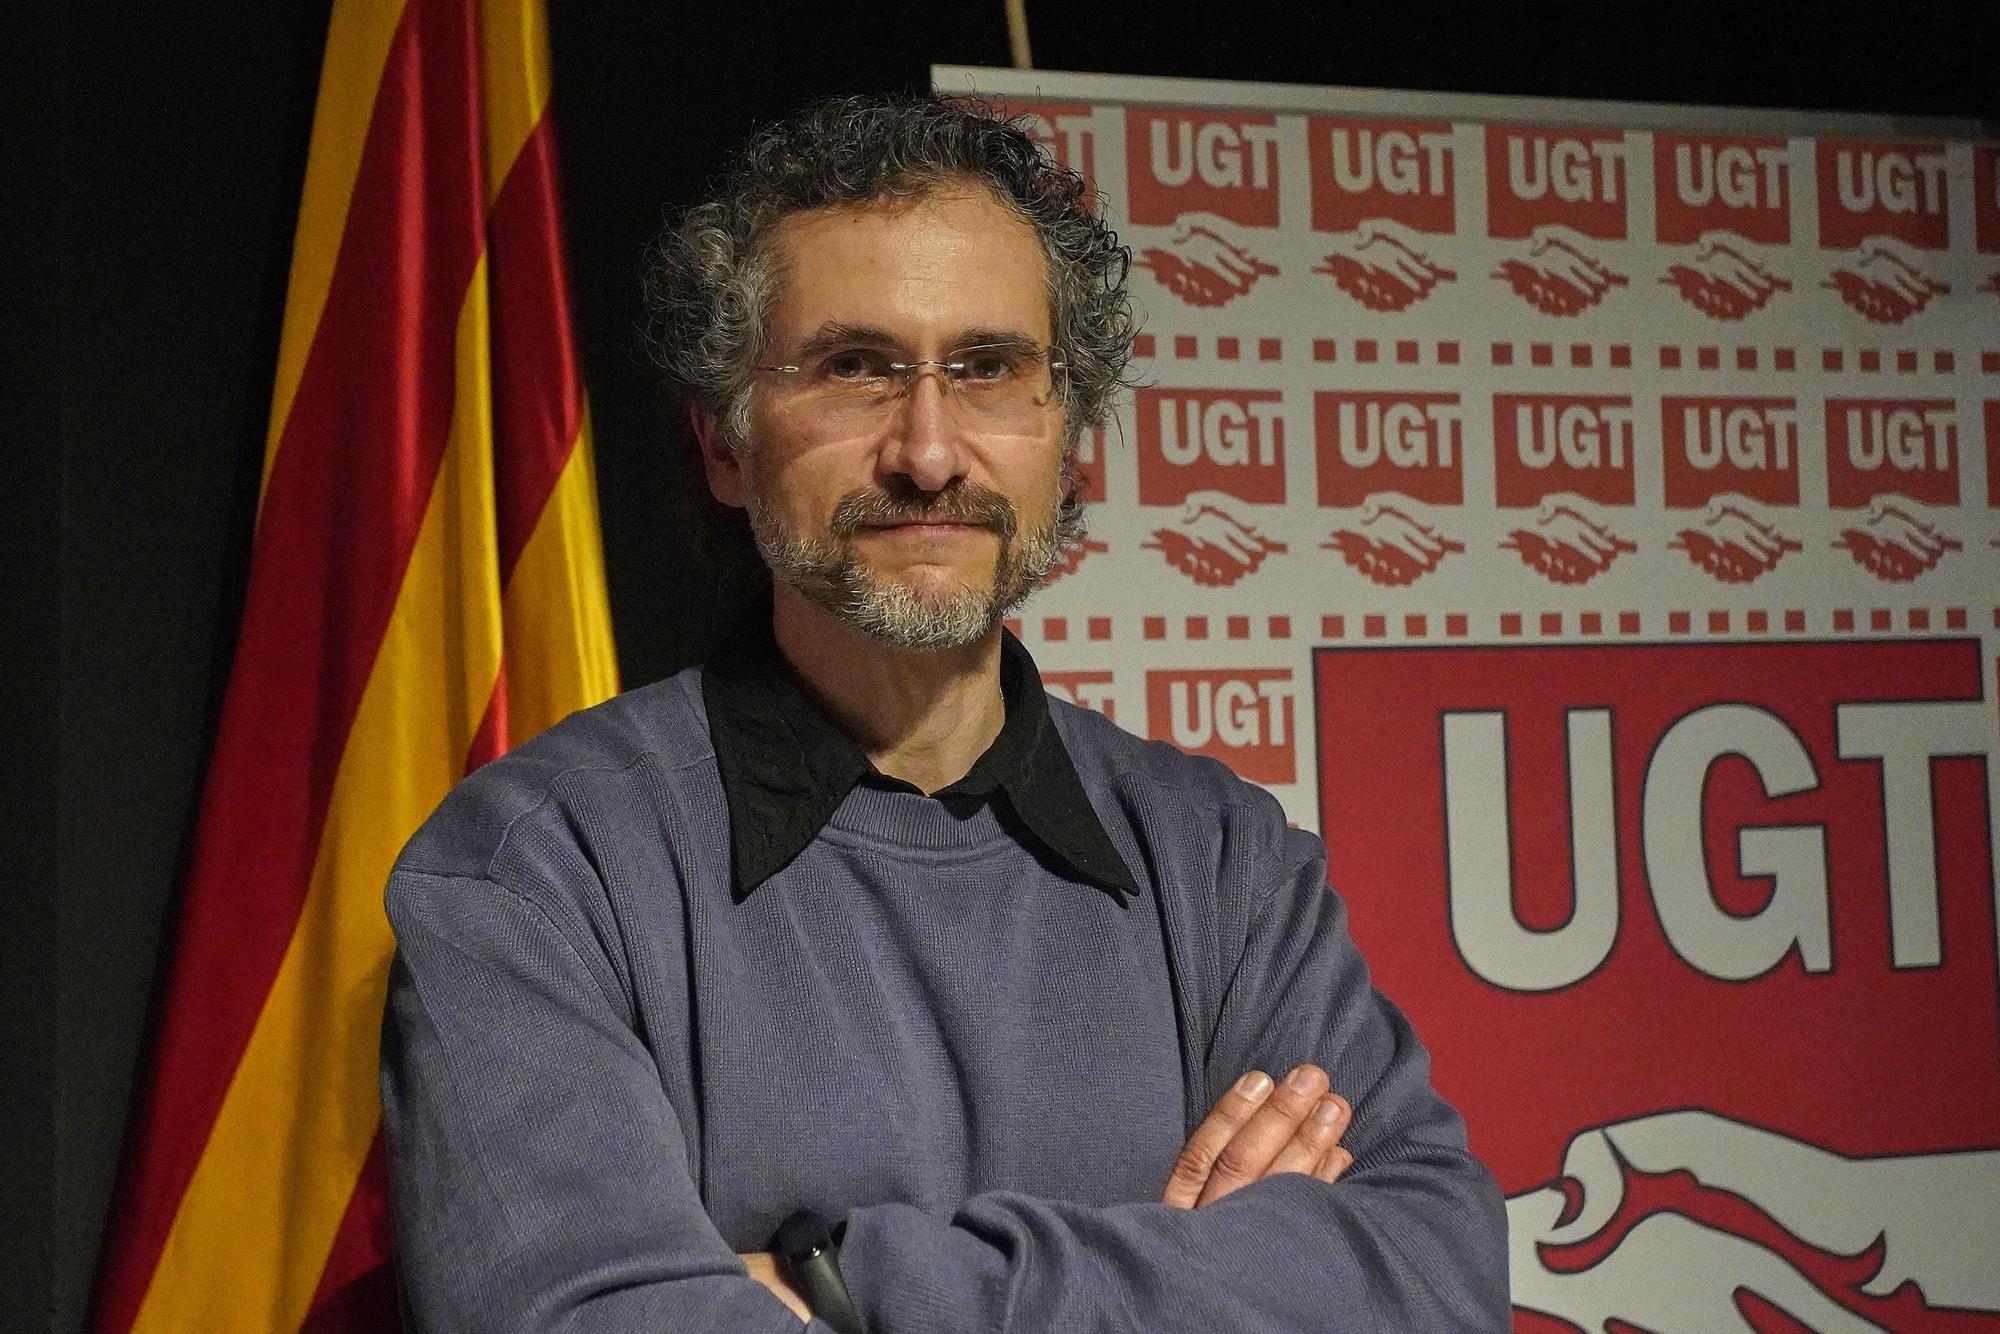 Maxi Rica, nou secretari general d'UGT a les comarques gironines